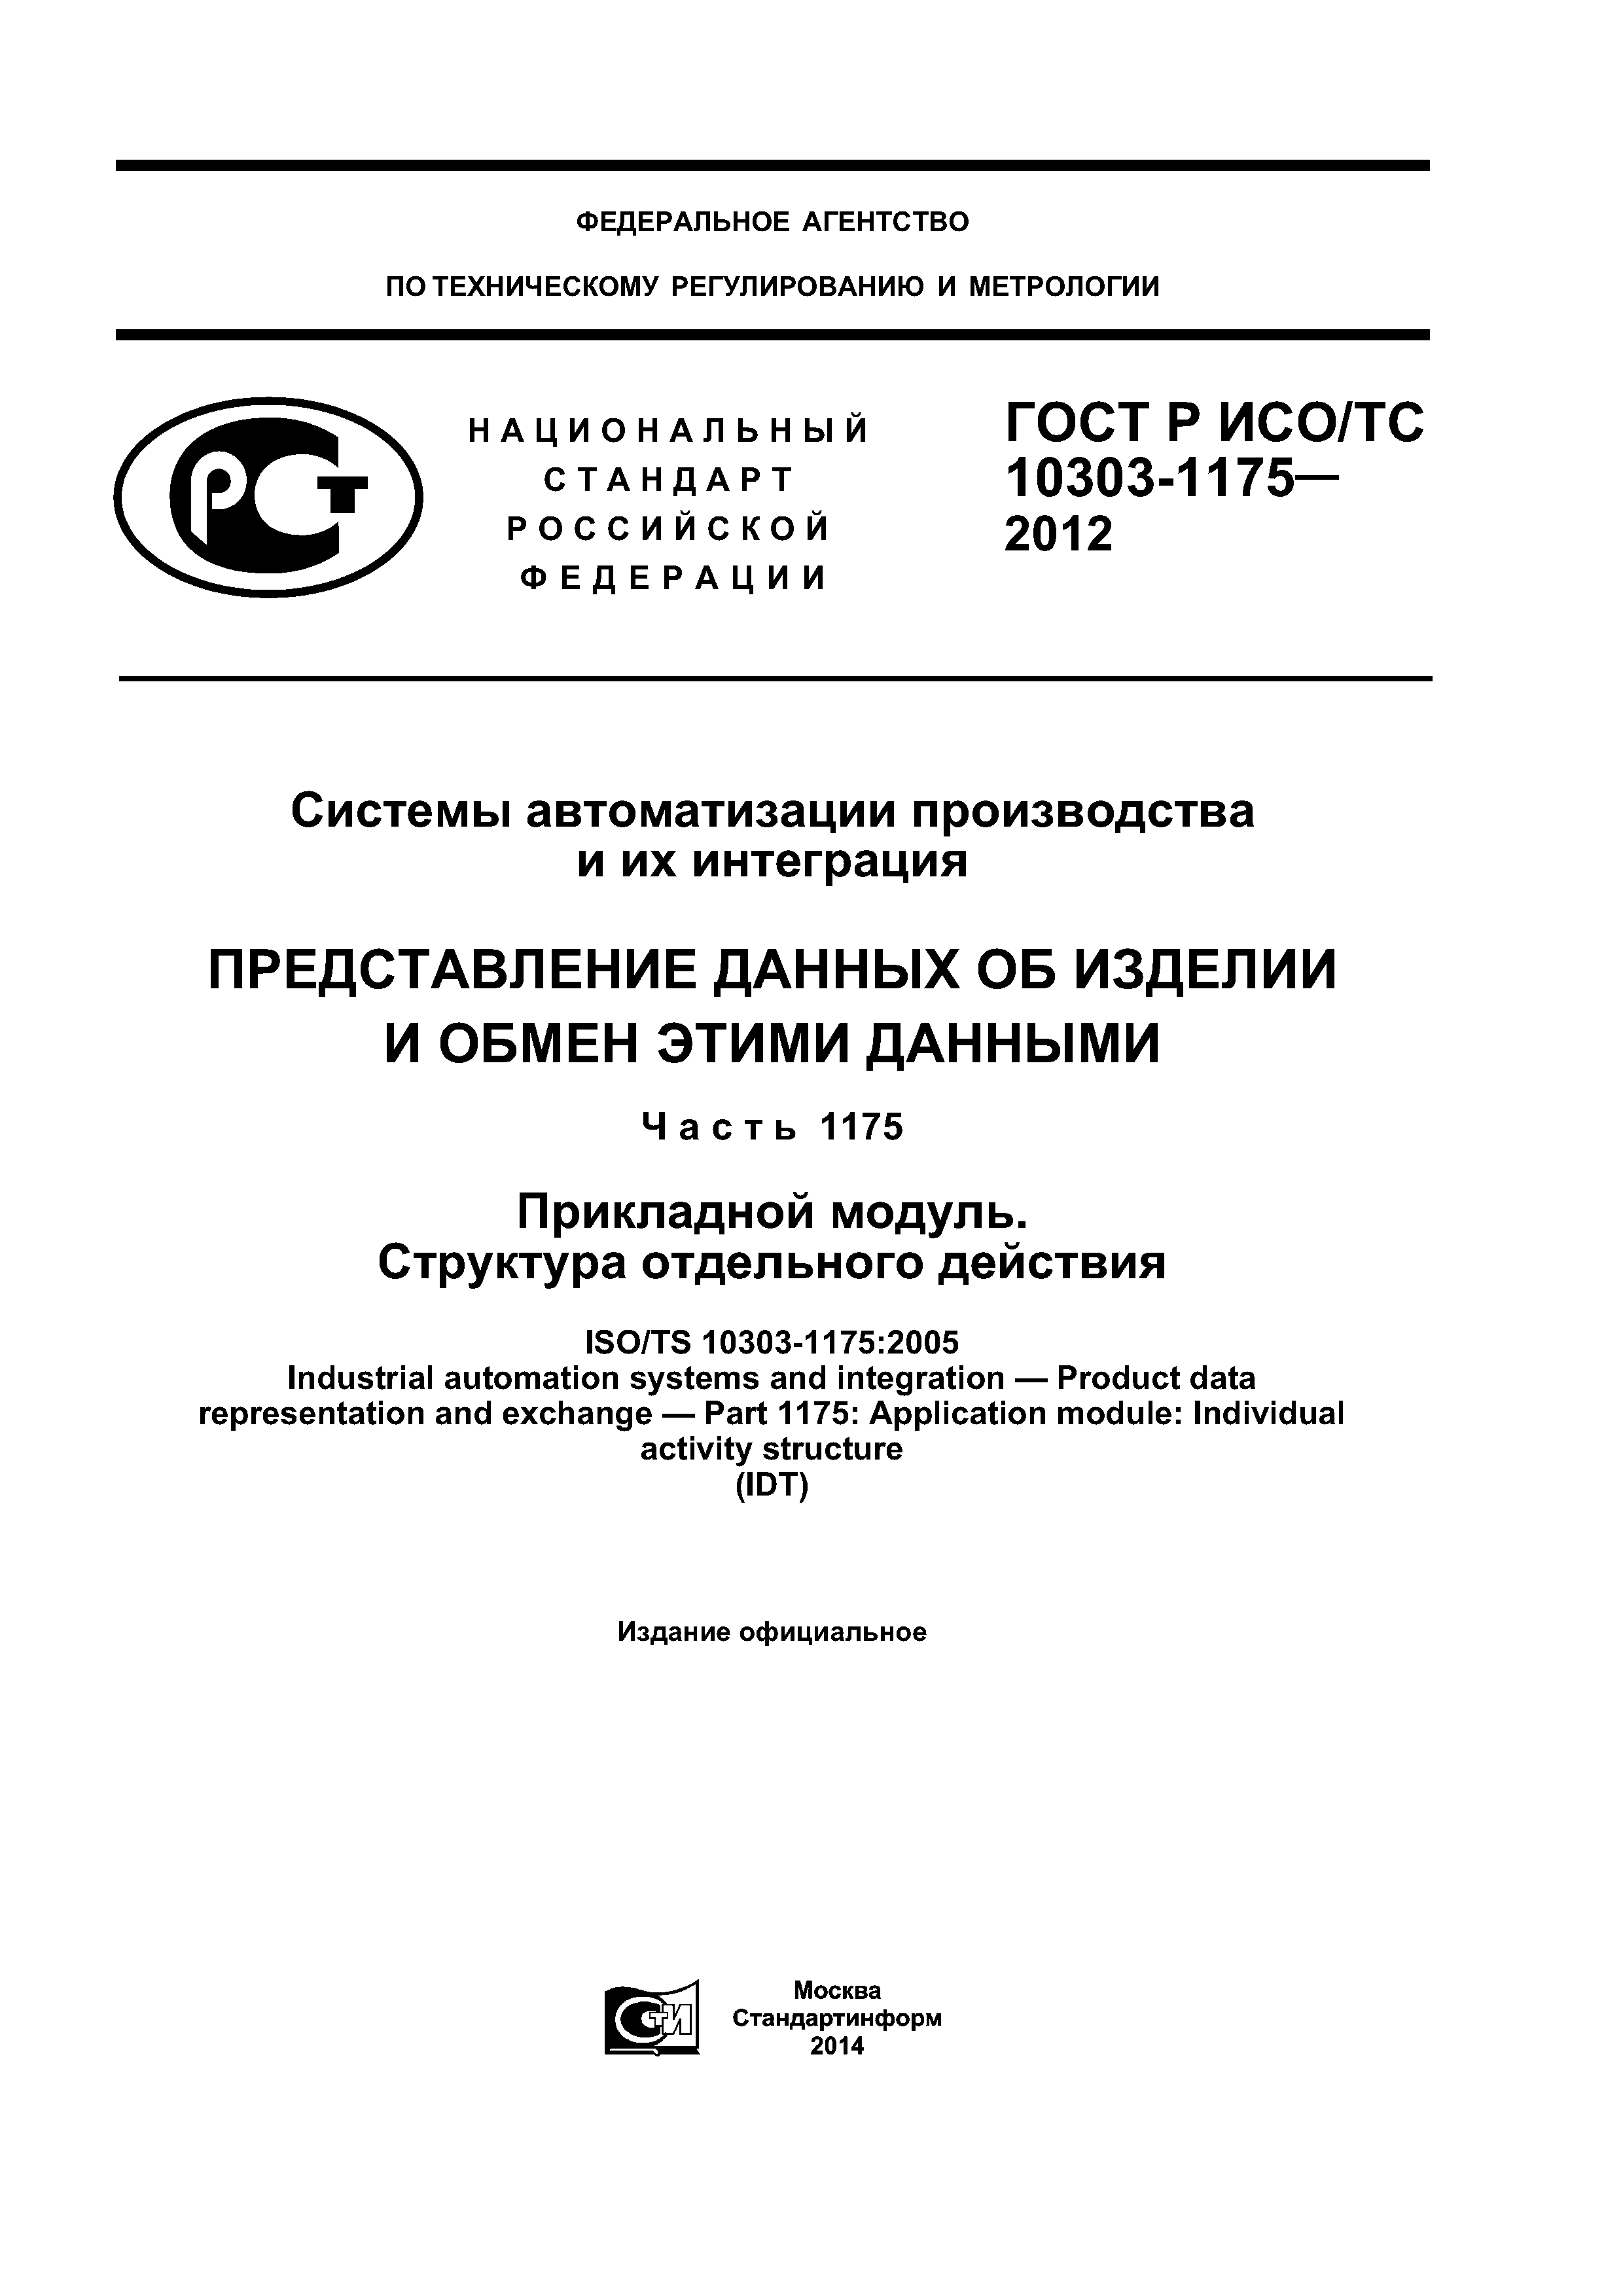 ГОСТ Р ИСО/ТС 10303-1175-2012